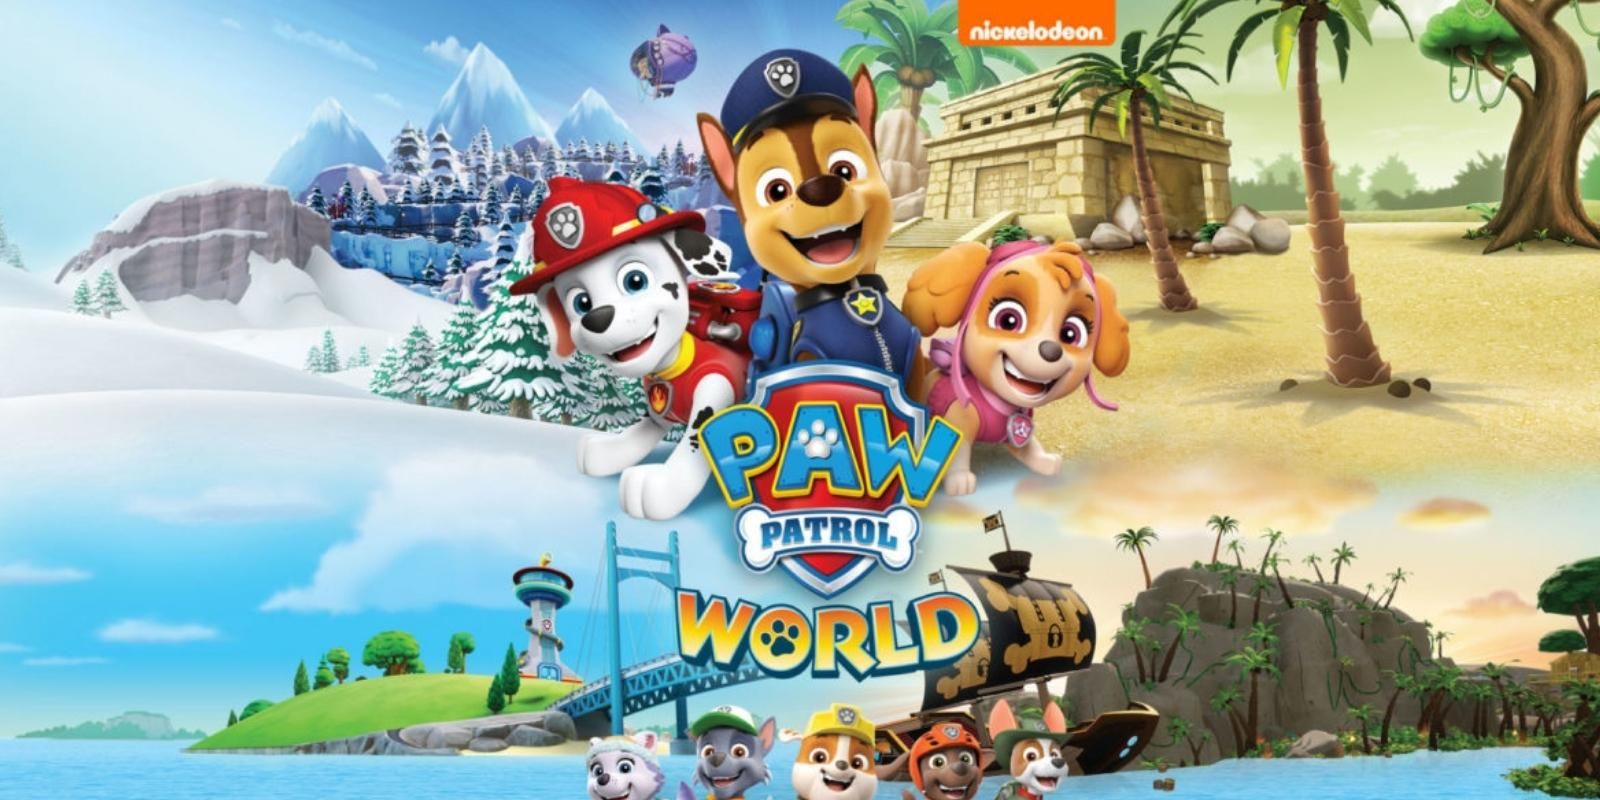 "La introducción de un niño a las tendencias de los juegos modernos": Paw Patrol World Review